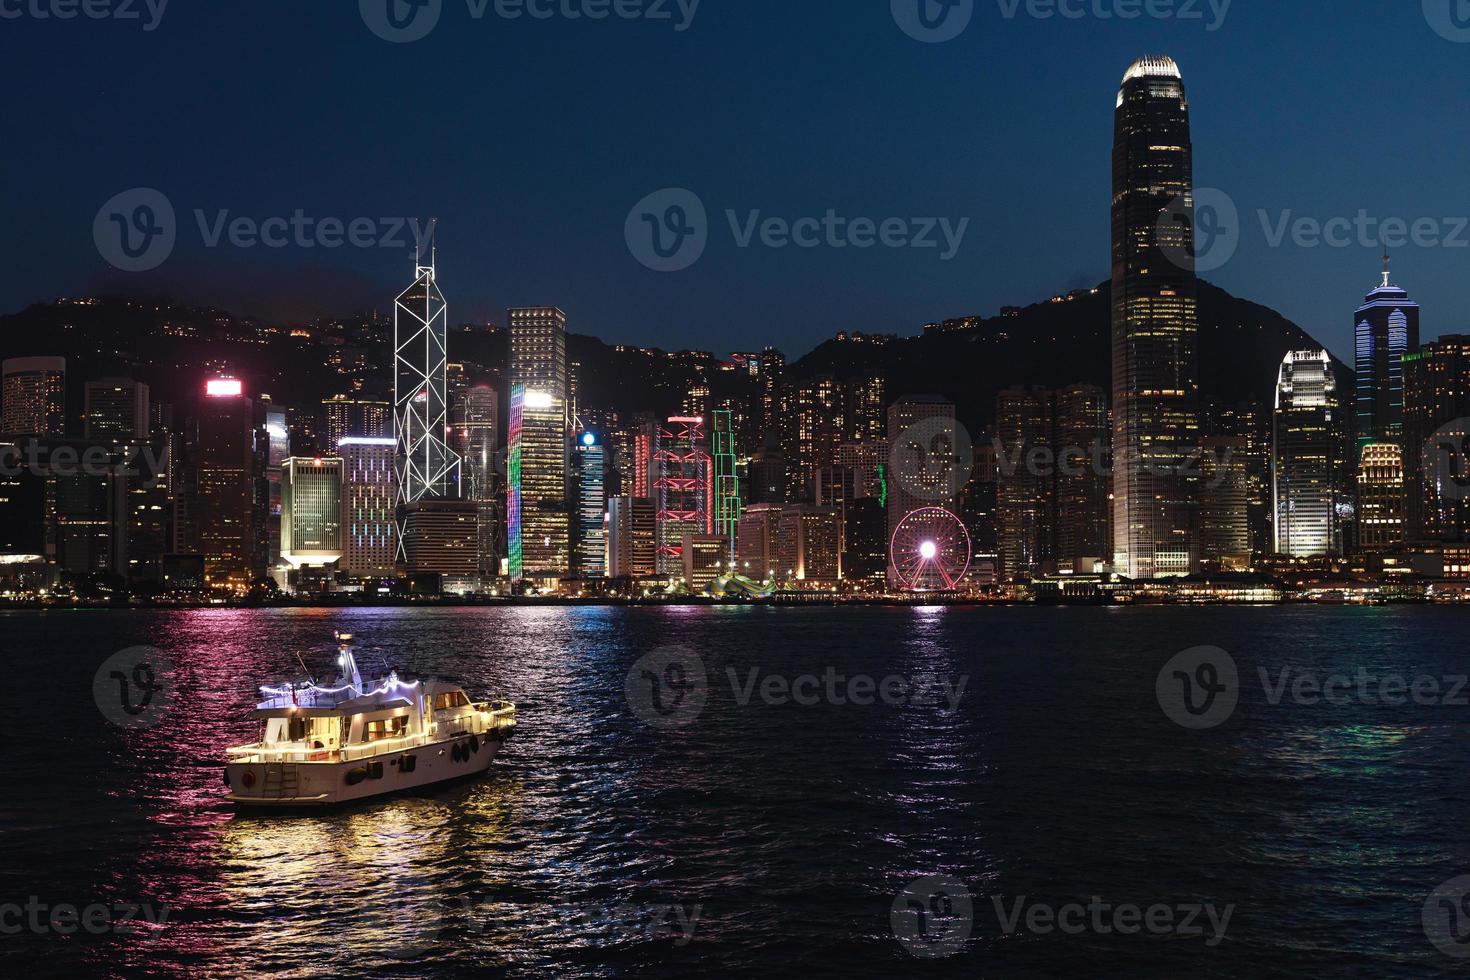 nacht hong Kong visie van de Victoria haven foto